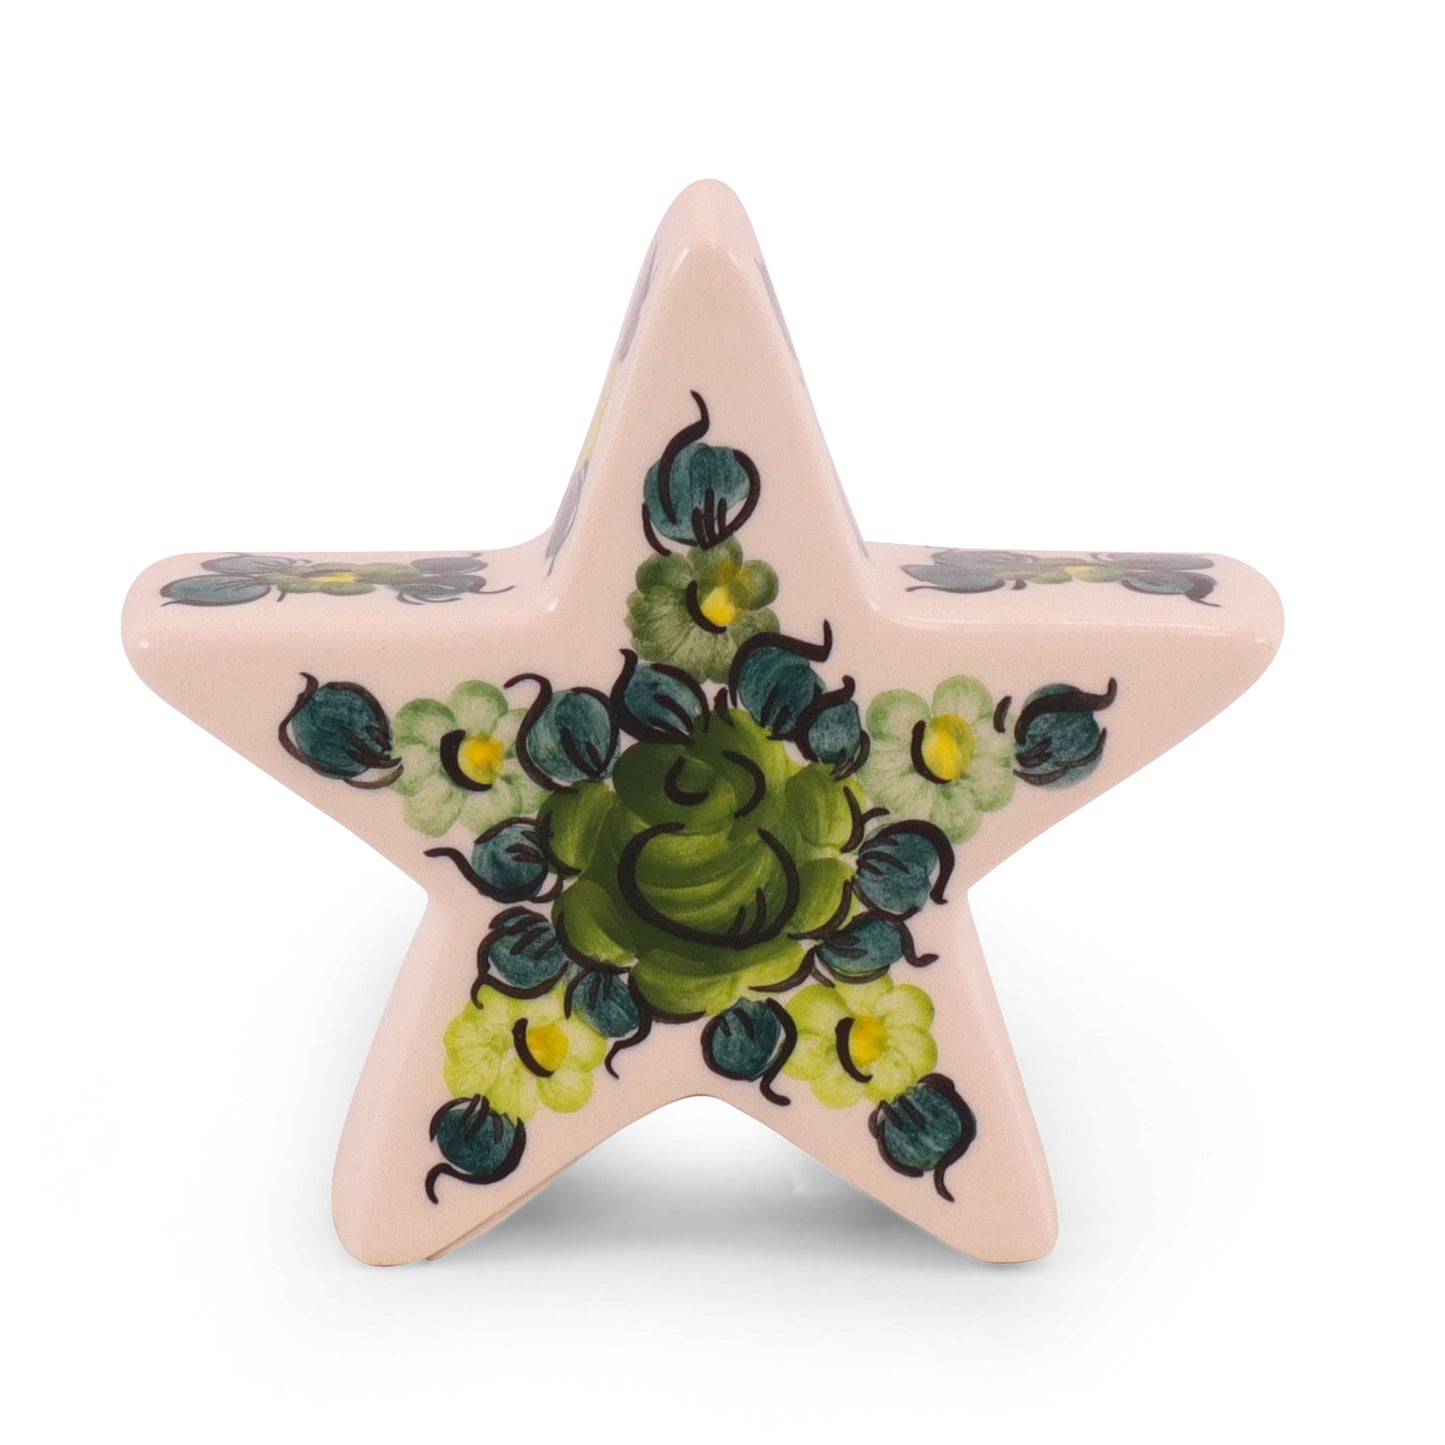 4"x4" Star Figurine. Pattern: Green